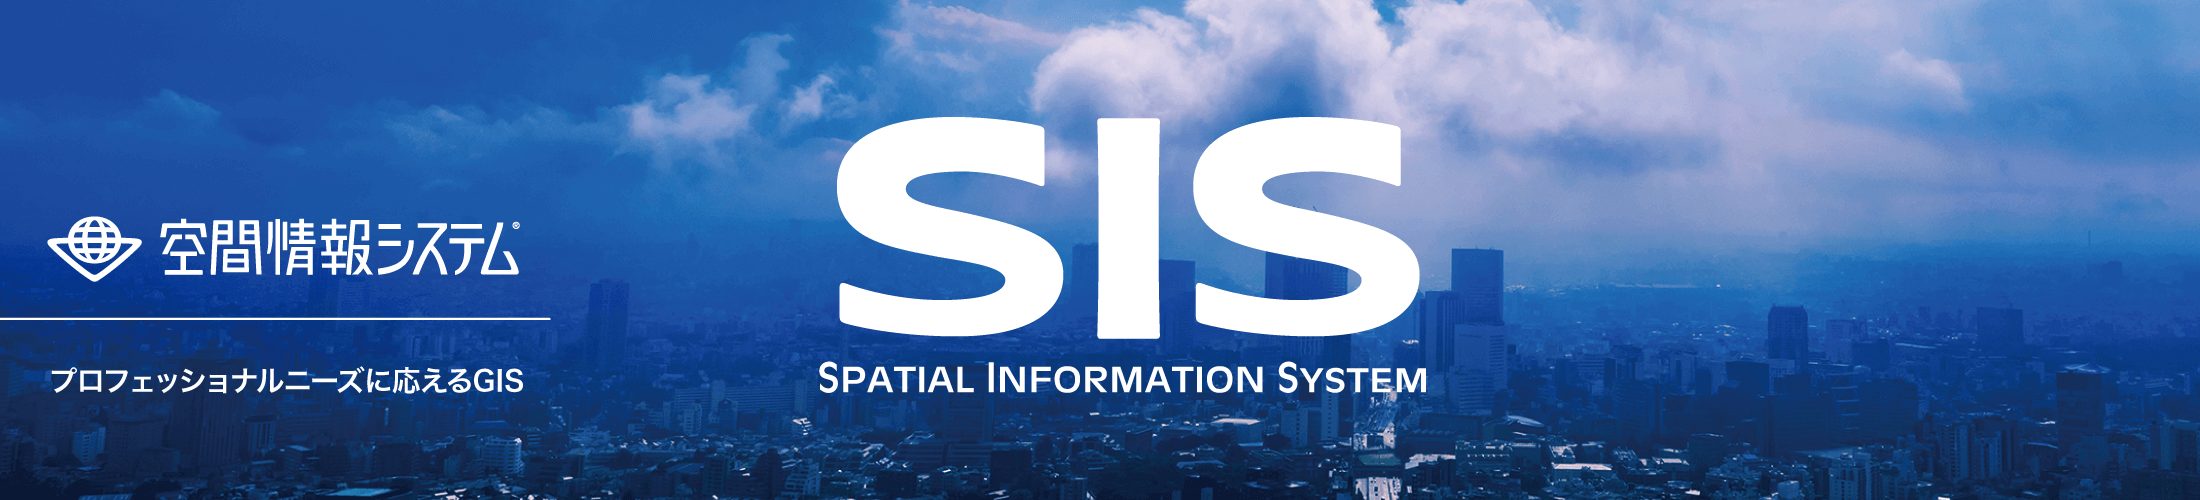 プロフェッショナルニーズに応えるGISソフト「SIS」